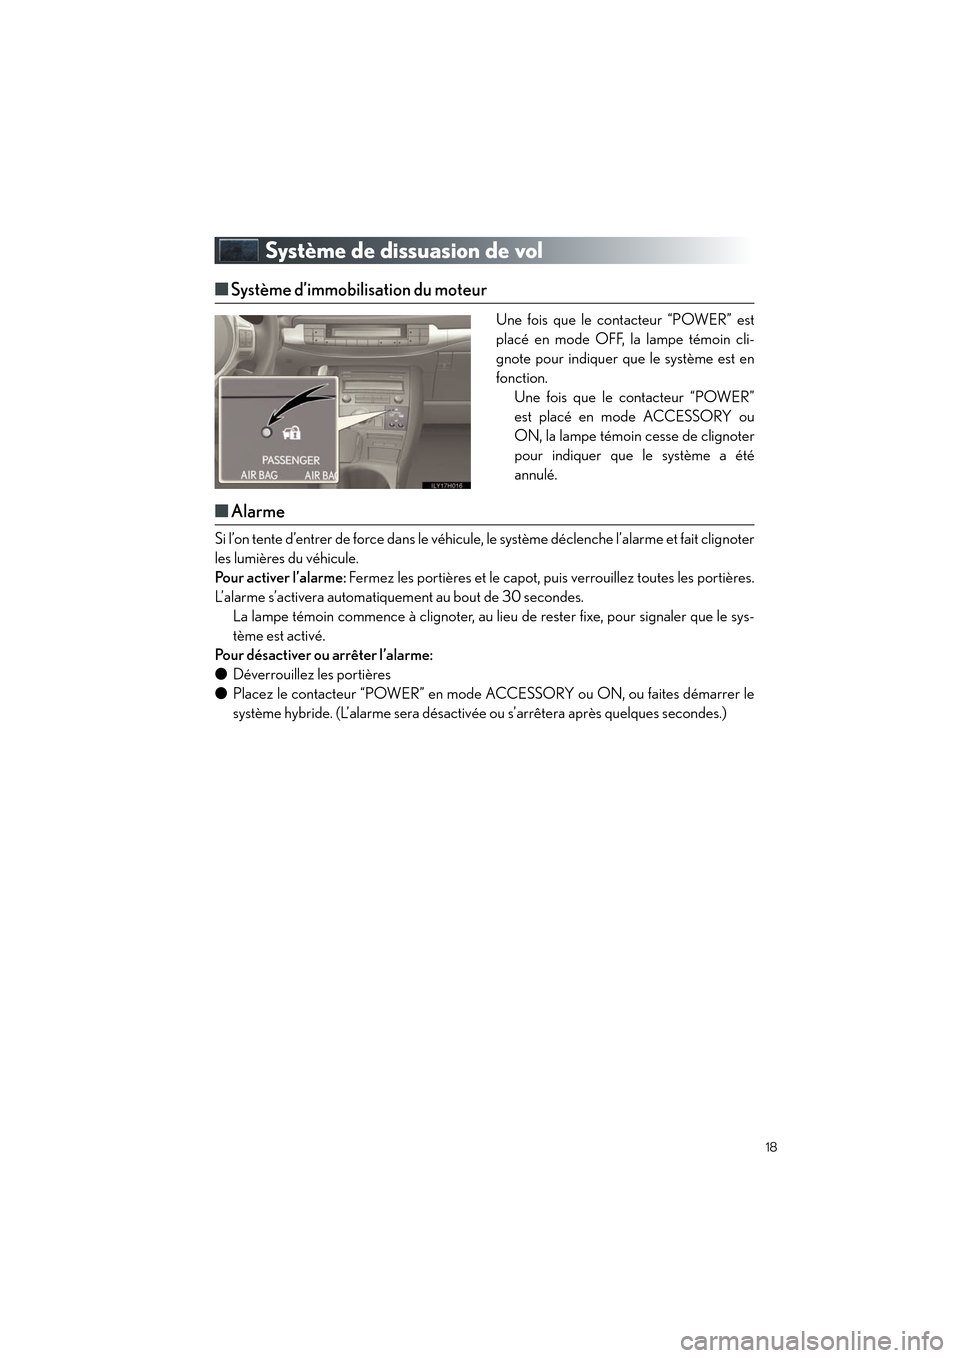 Lexus CT200h 2012  Guide rapide du manuel du propriétaire (in French) 18
CT200h_QG_D (OM76052D)
Système de dissuasion de vol
■Système d’immobilisation du moteur
Une fois que le contacteur “POWER” est
placé en mode OFF, la lampe témoin cli-
gnote pour indique